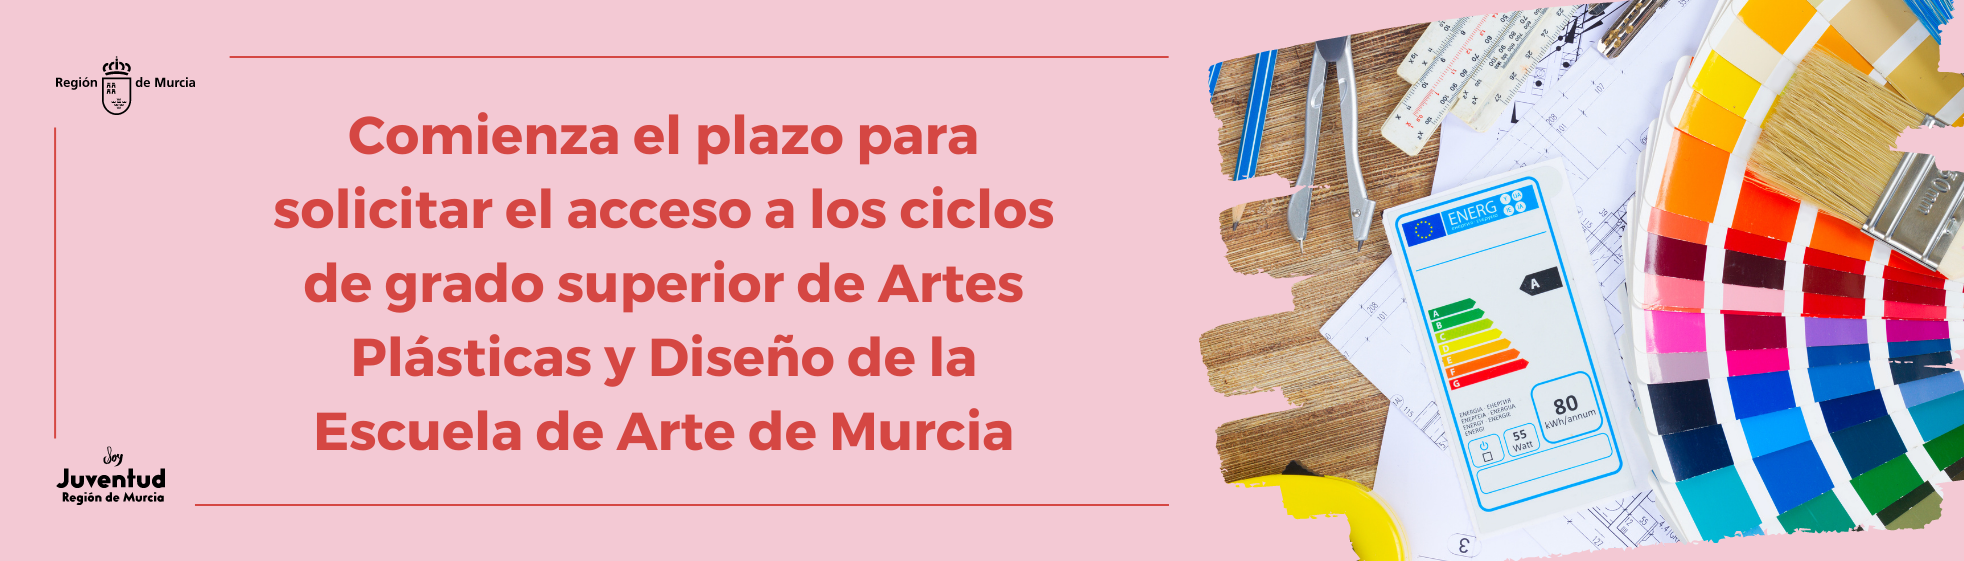 Comienza el plazo para solicitar el acceso a los ciclos de grado superior de Artes Plásticas y Diseño de la Escuela de Arte de Murcia